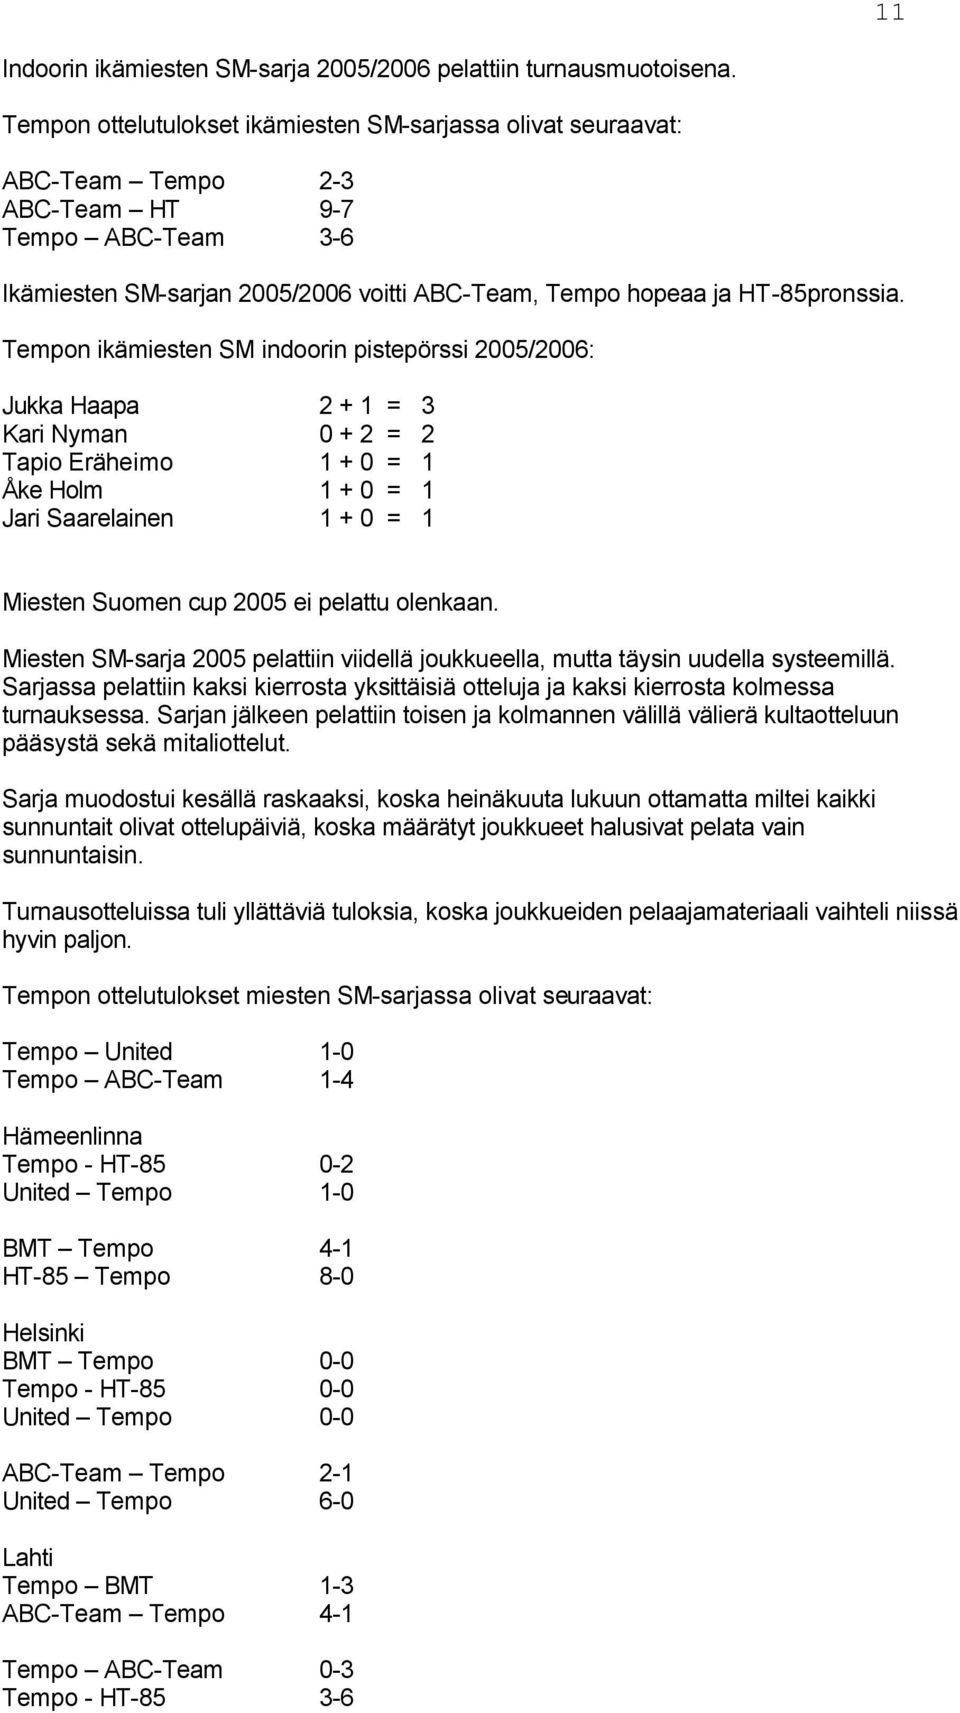 Tempon ikämiesten SM indoorin pistepörssi 2005/2006: Jukka Haapa 2 + 1 = 3 Kari Nyman 0 + 2 = 2 Tapio Eräheimo 1 + 0 = 1 Åke Holm 1 + 0 = 1 Jari Saarelainen 1 + 0 = 1 Miesten Suomen cup 2005 ei